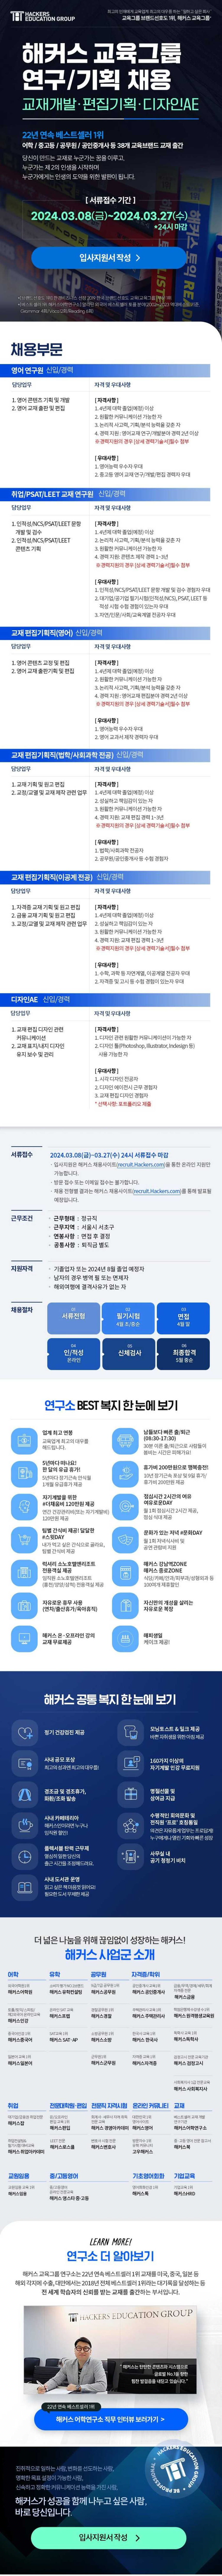 [해커스교육그룹] 연구/기획부문 신입/경력 채용